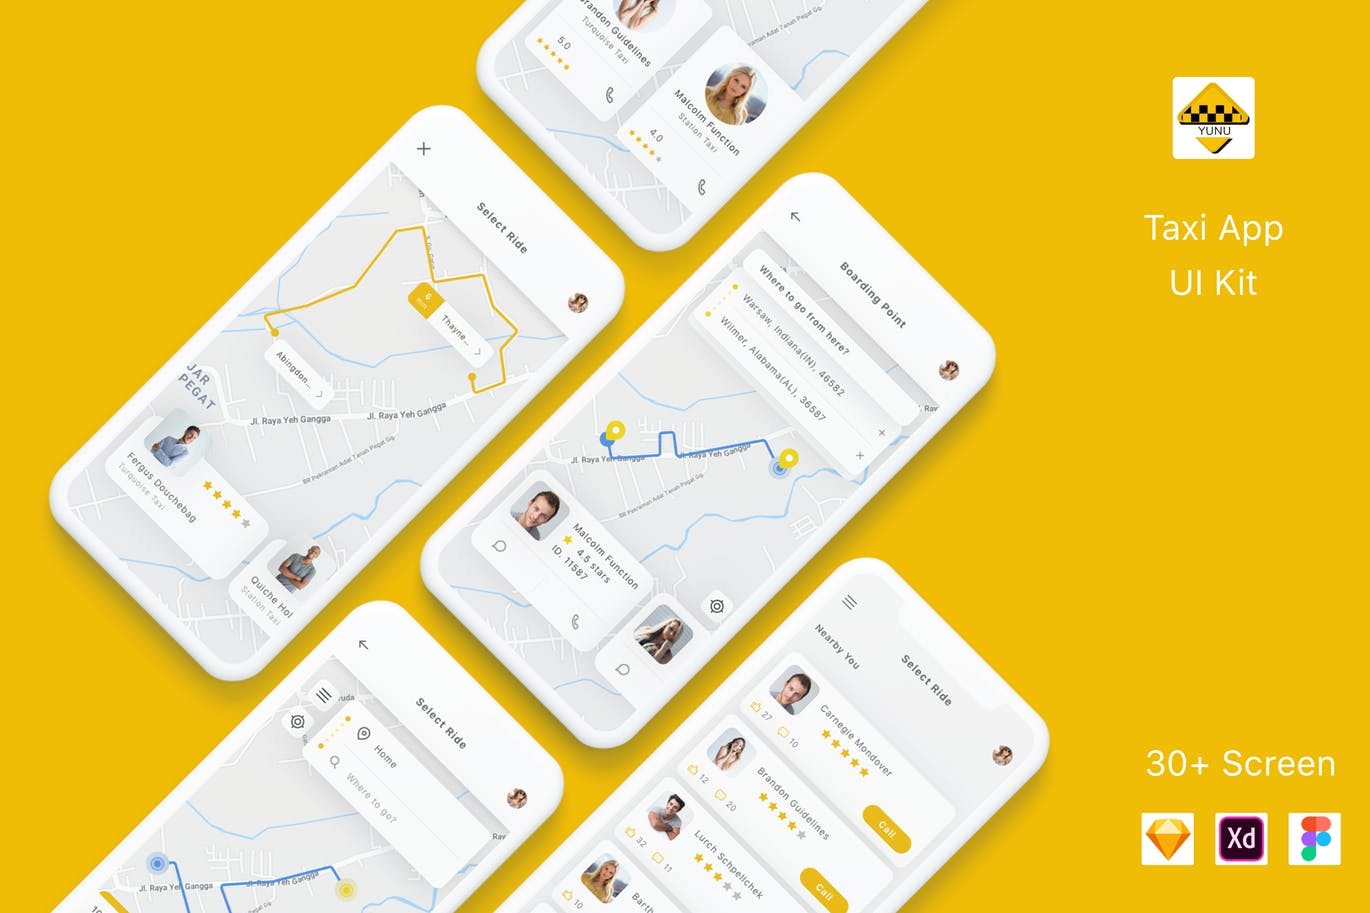 出租车预约平台APP交互界面设计素材库精选套件 Yunu – Taxi App UI Kit插图